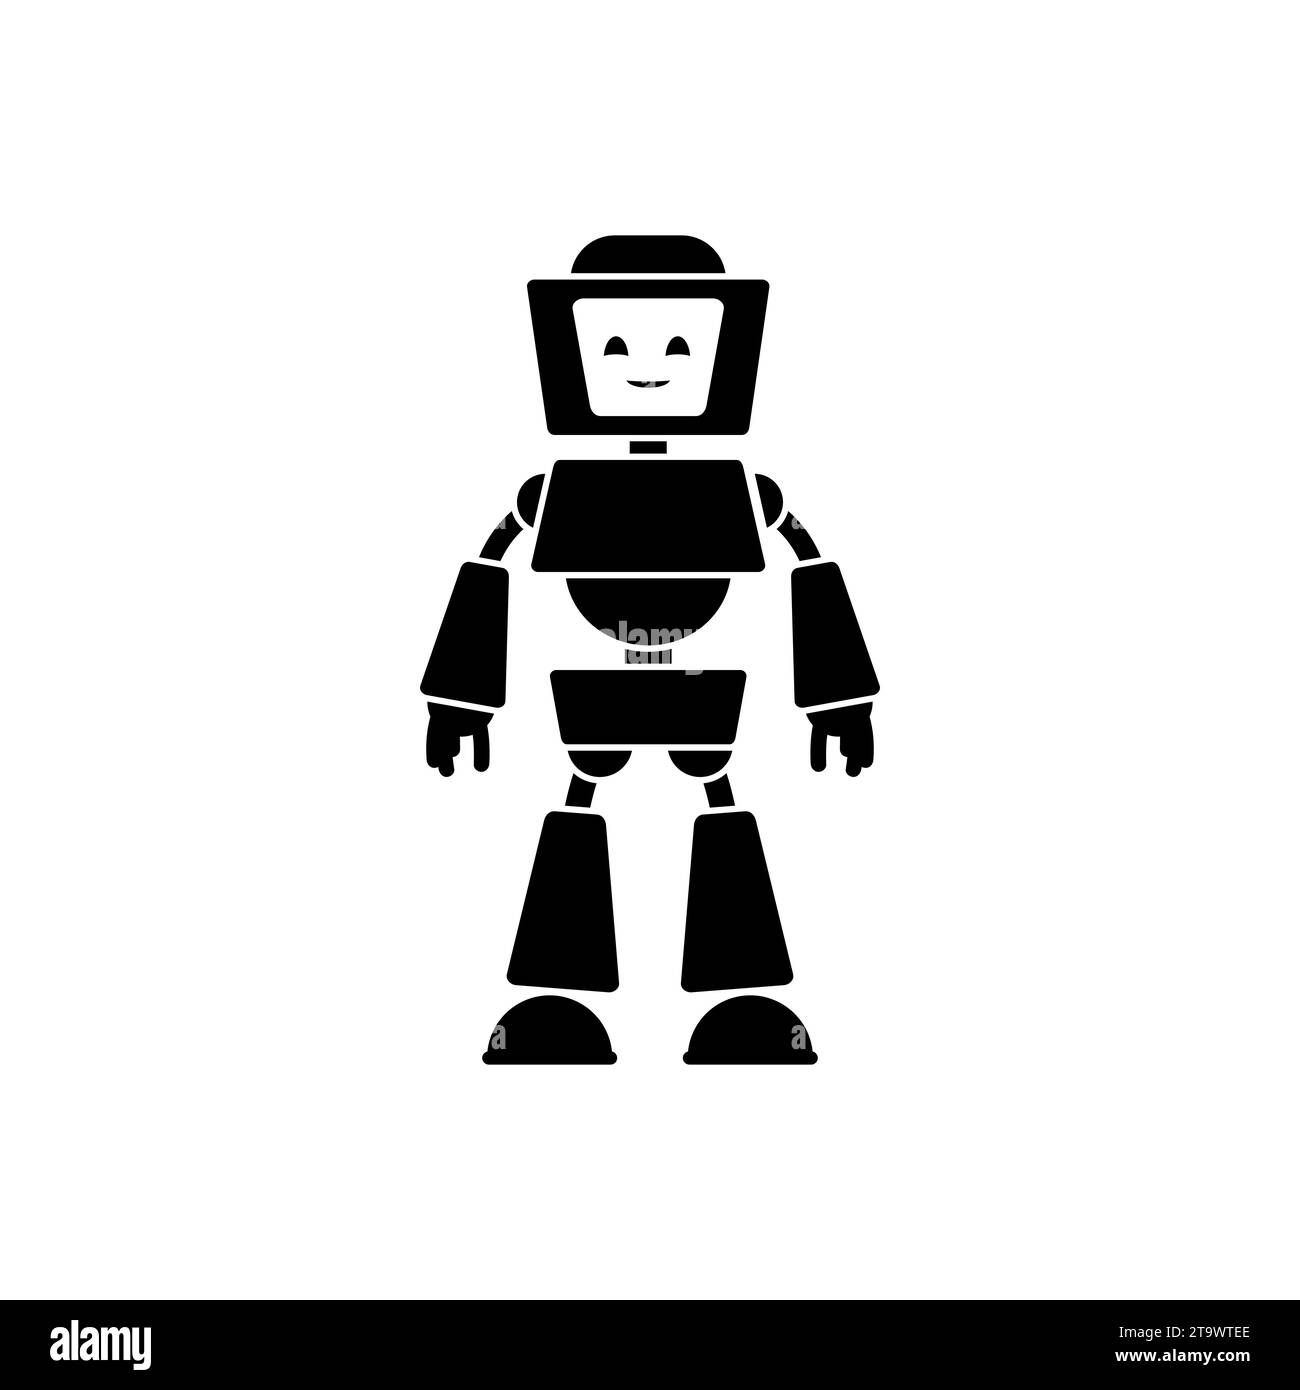 Icona robot carina isolata su sfondo bianco. Simpatico robot futuristico con volto e schermo sorridenti e amichevoli. Macchina umanoide, adorabile simbolo cyborg. Illustrazione Vettoriale